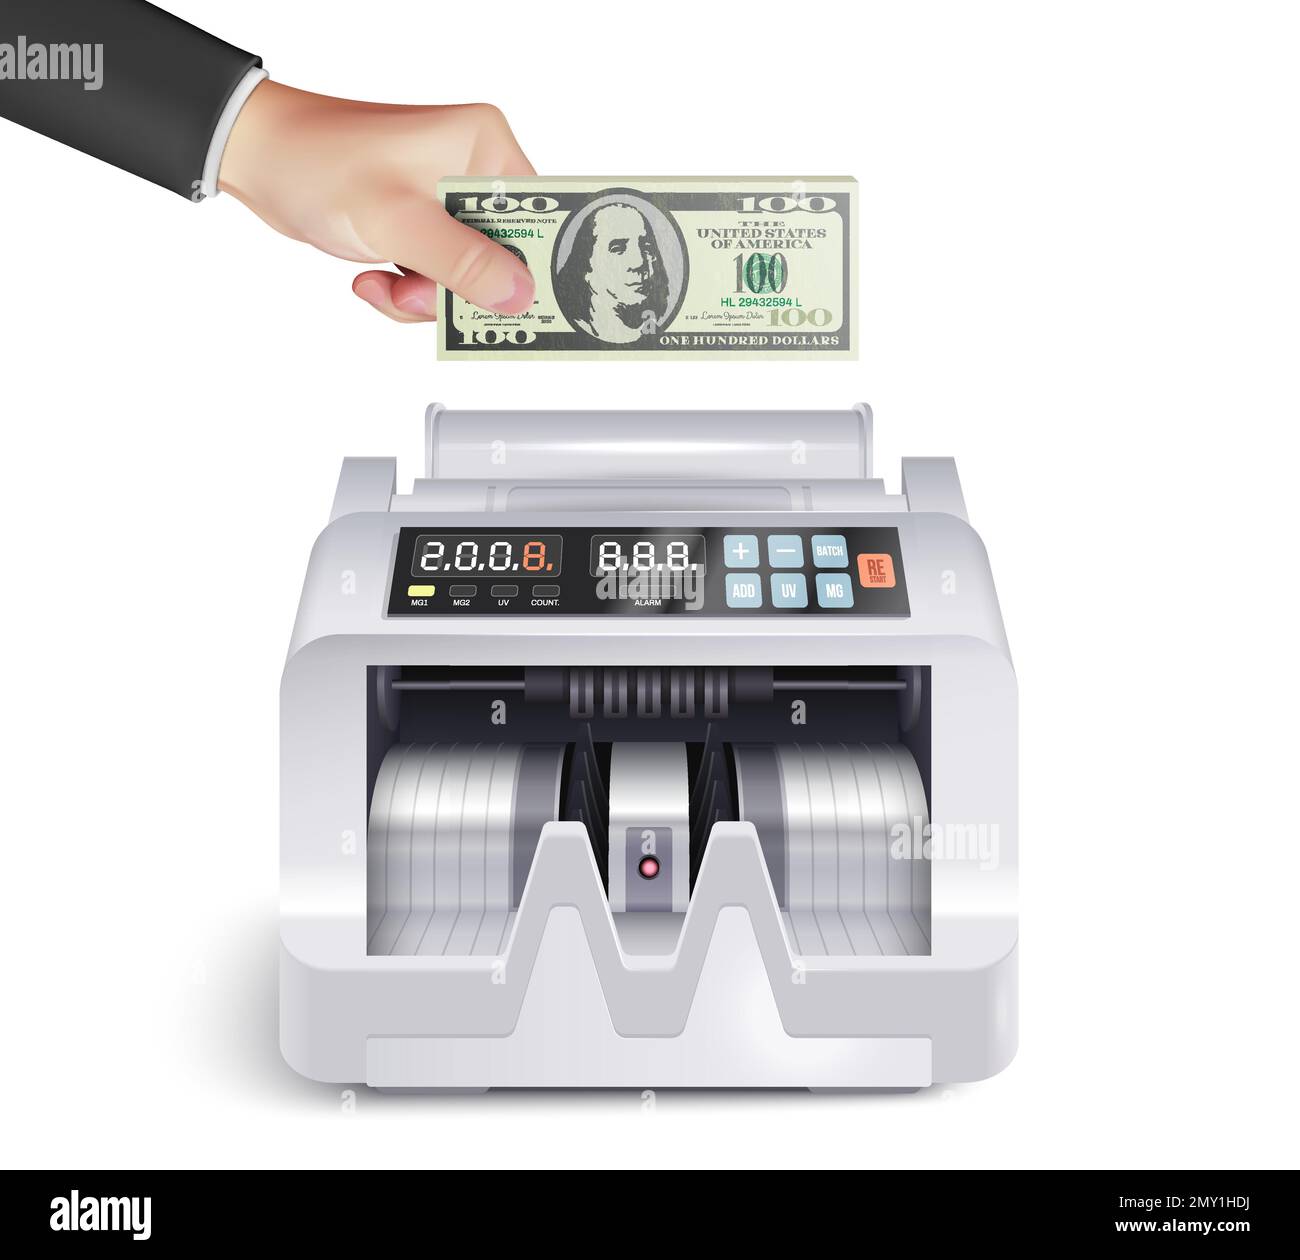 Composizione realistica della macchina di conteggio di soldi con la mano umana che mette la banconota del dollaro nel dispositivo sull'illustrazione del vettore di fondo vuota Illustrazione Vettoriale